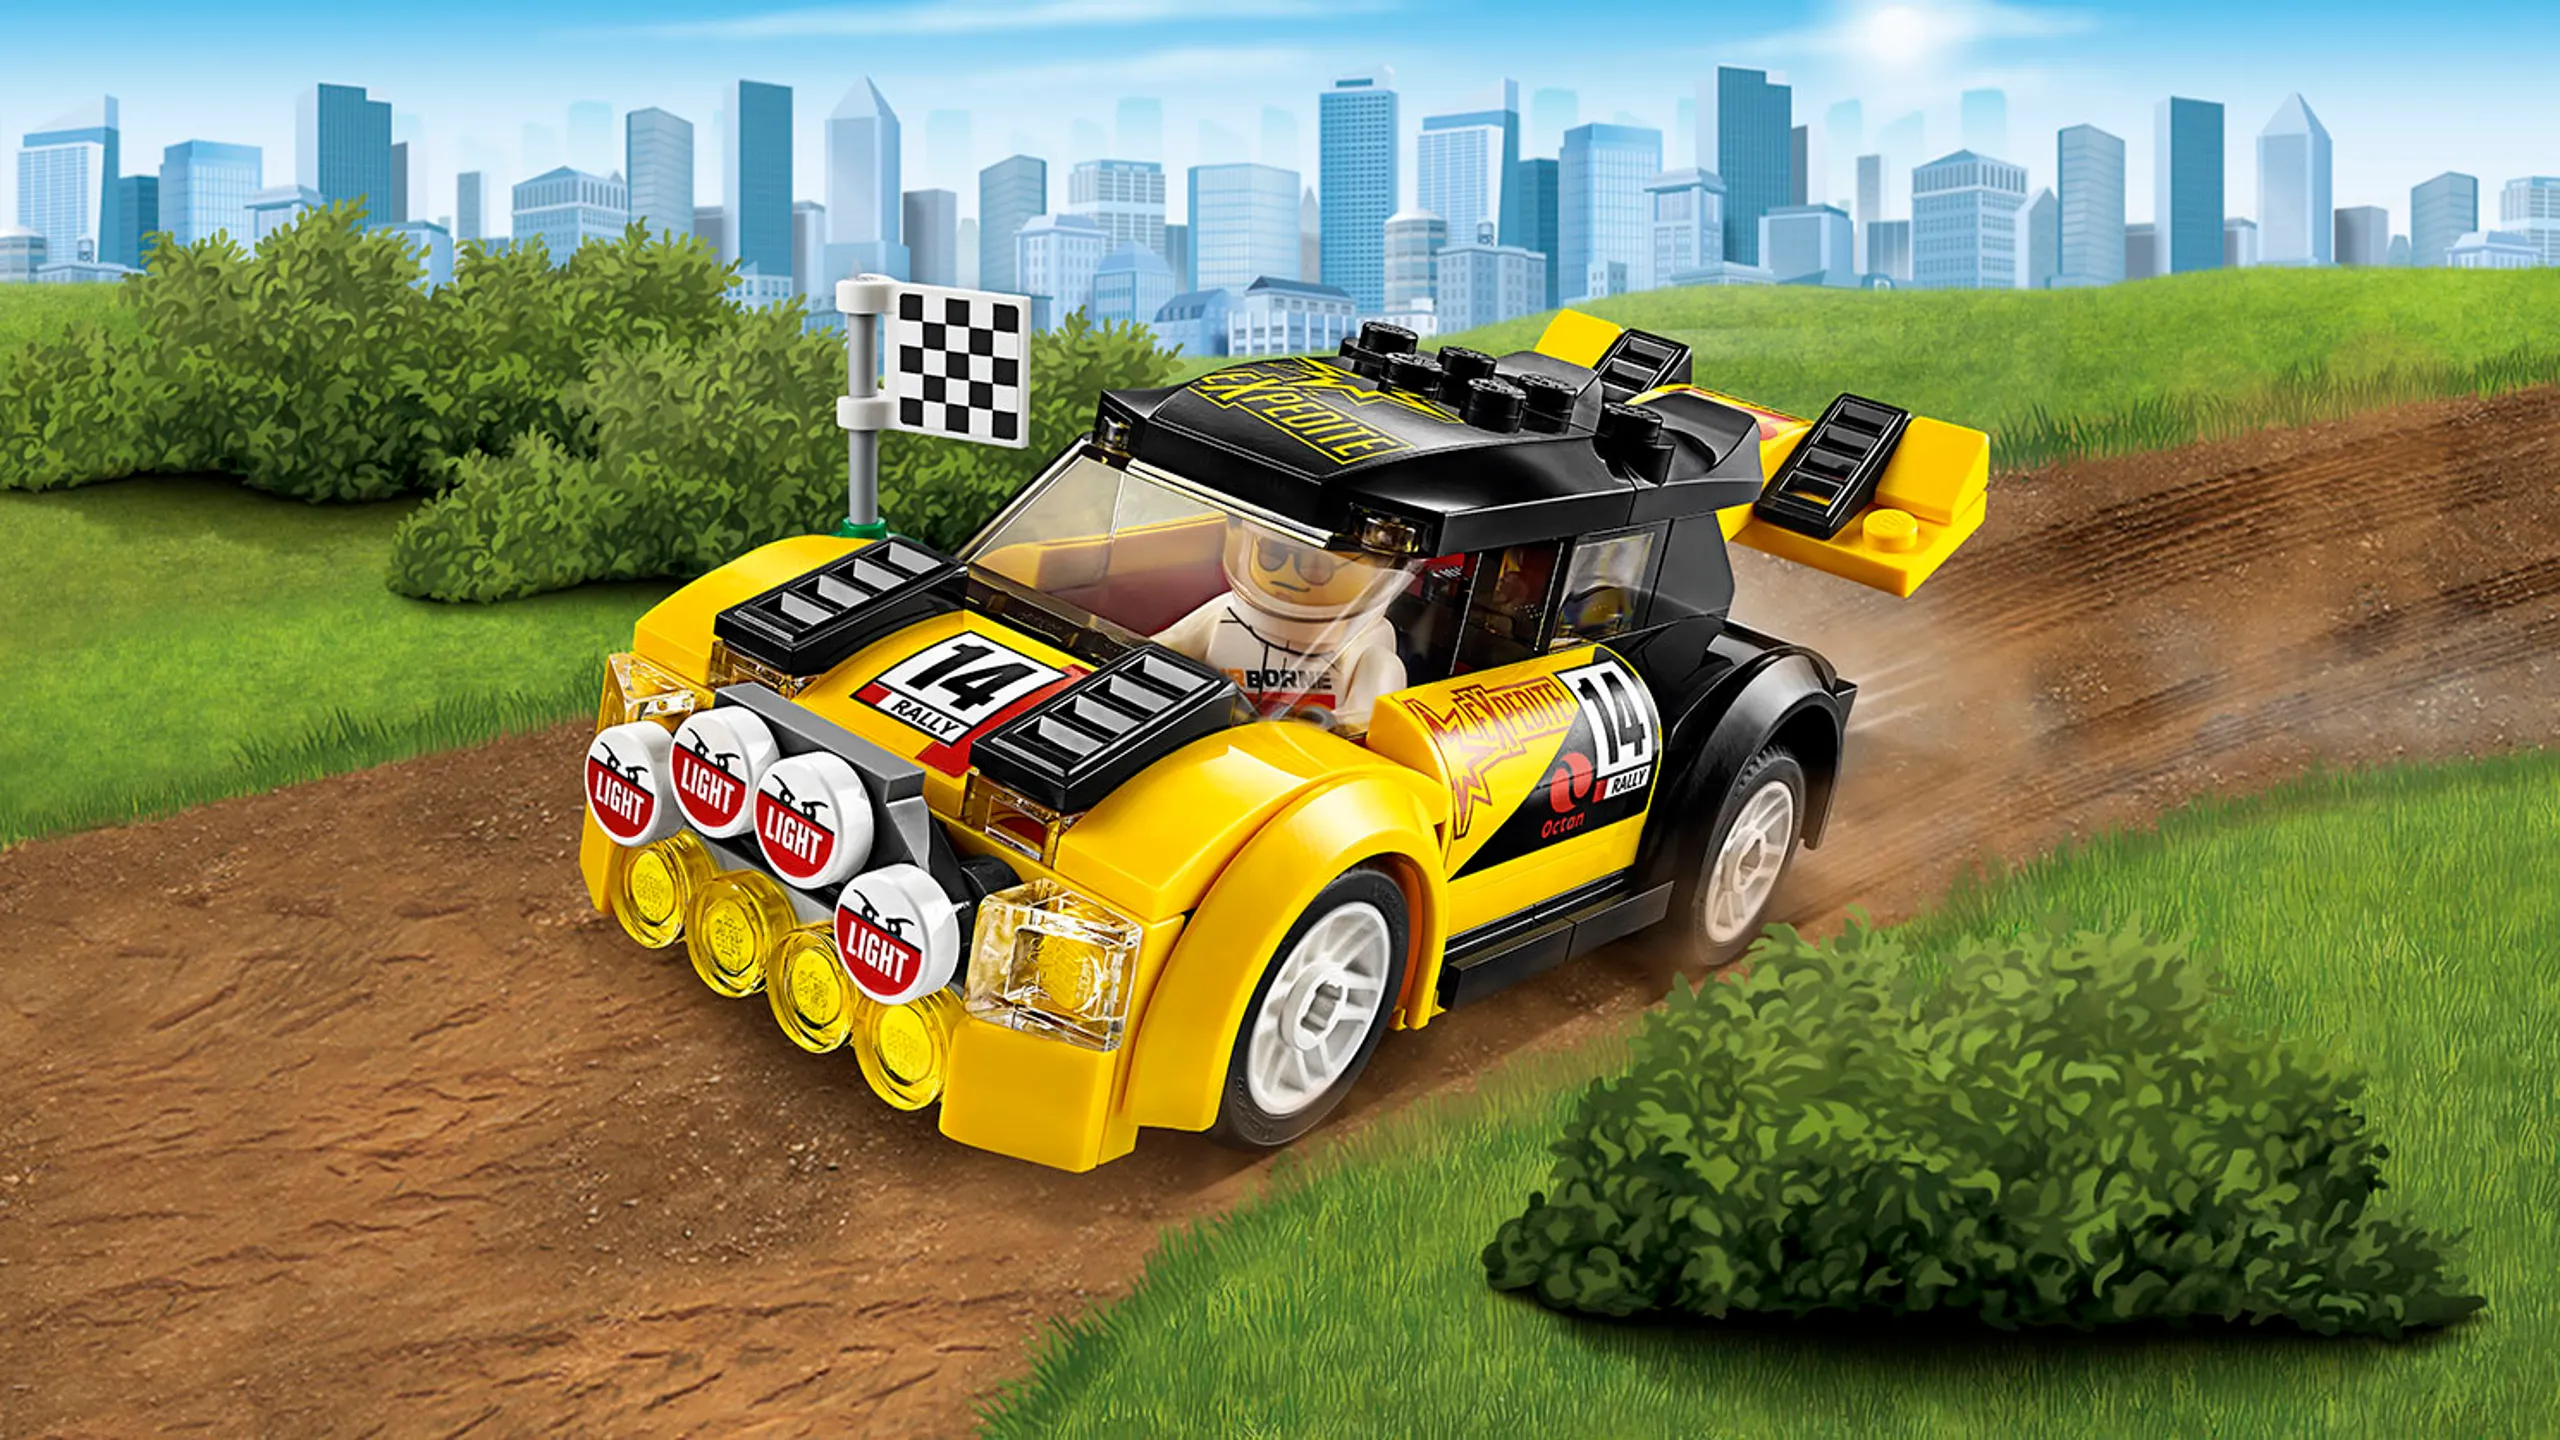 Superpojazdy LEGO City — Auto wyścigowe 60113